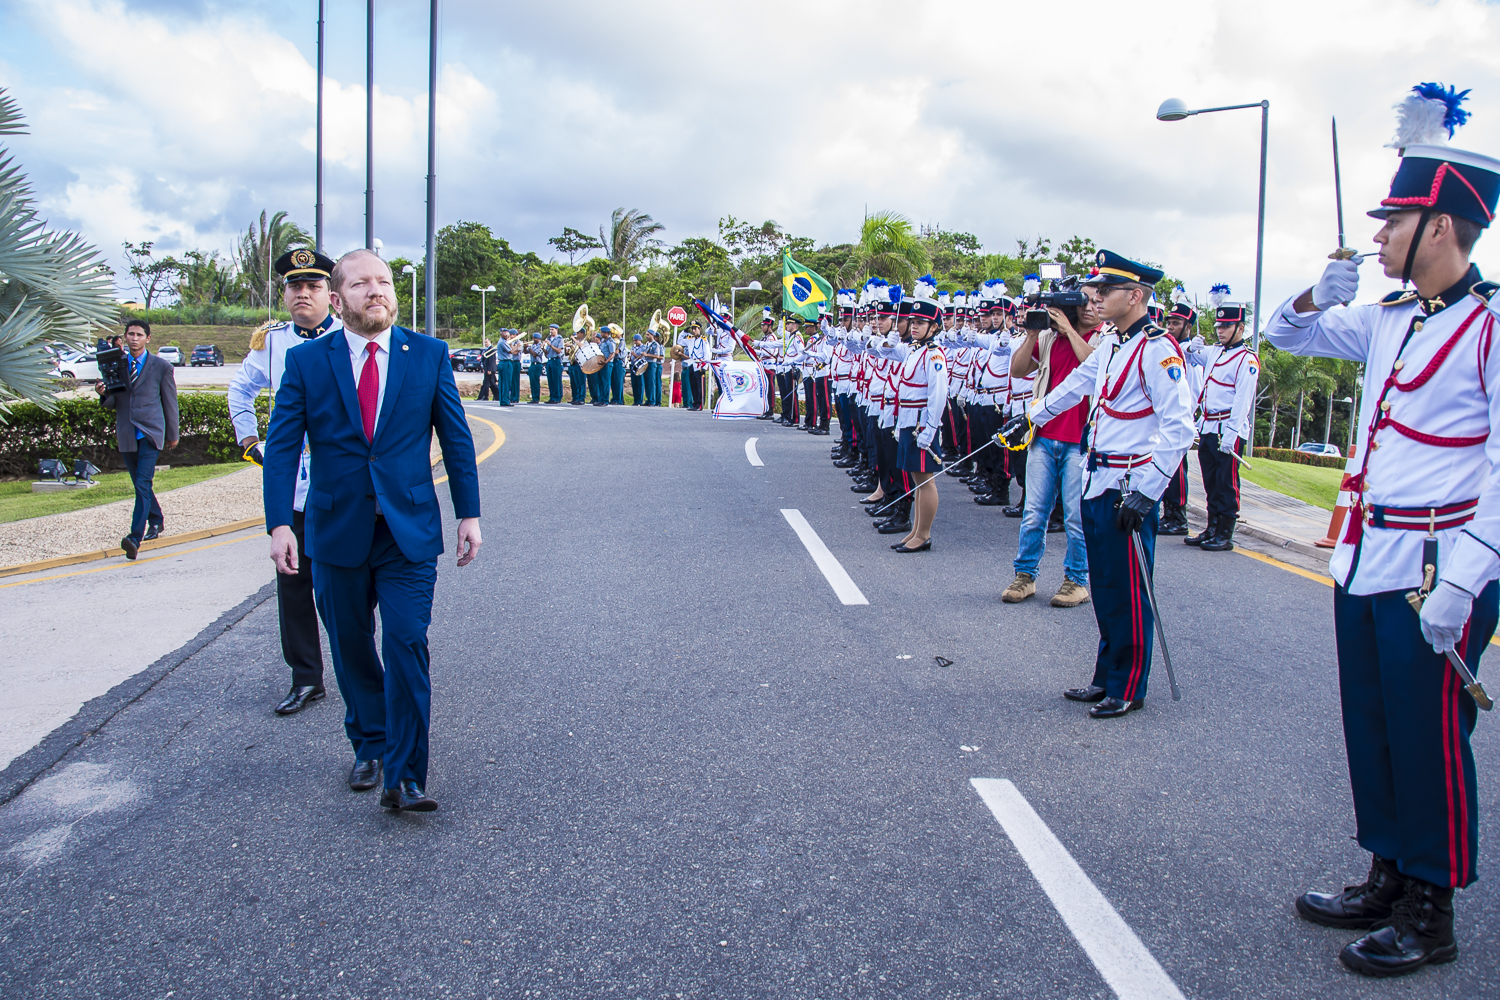 Cerimônia Militar marca início dos trabalhos na Assembleia Legislativa do Maranhão